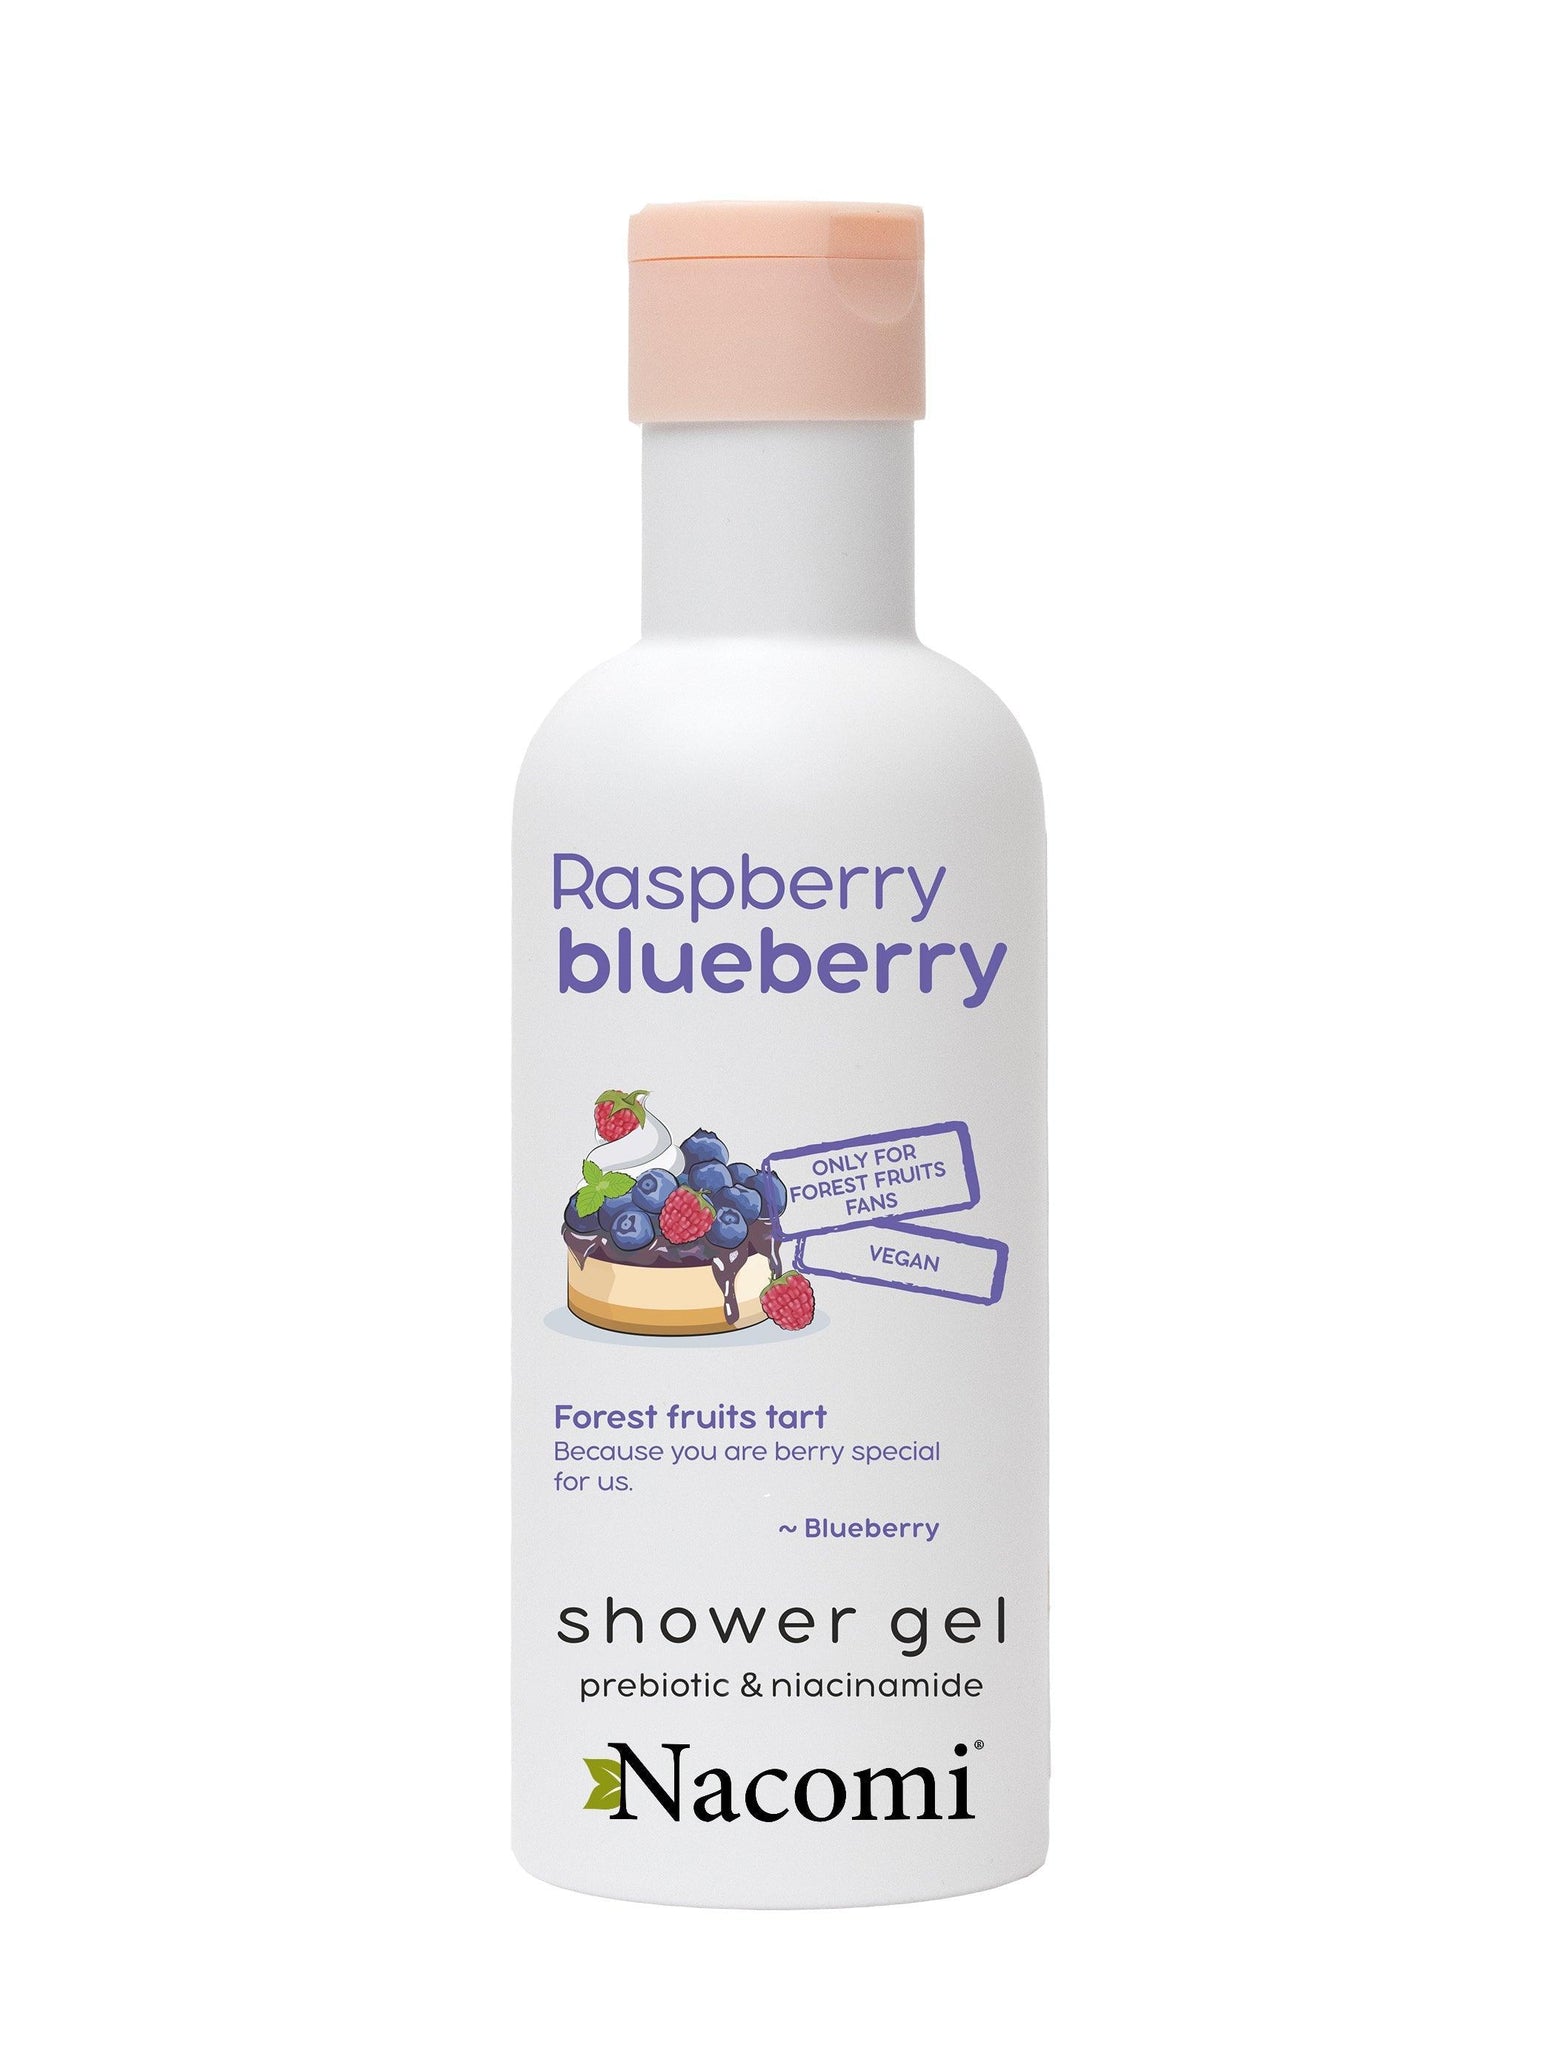 Nacomi Raspberry And Blueberry Shower Gel 300 ml - Mrayti Store